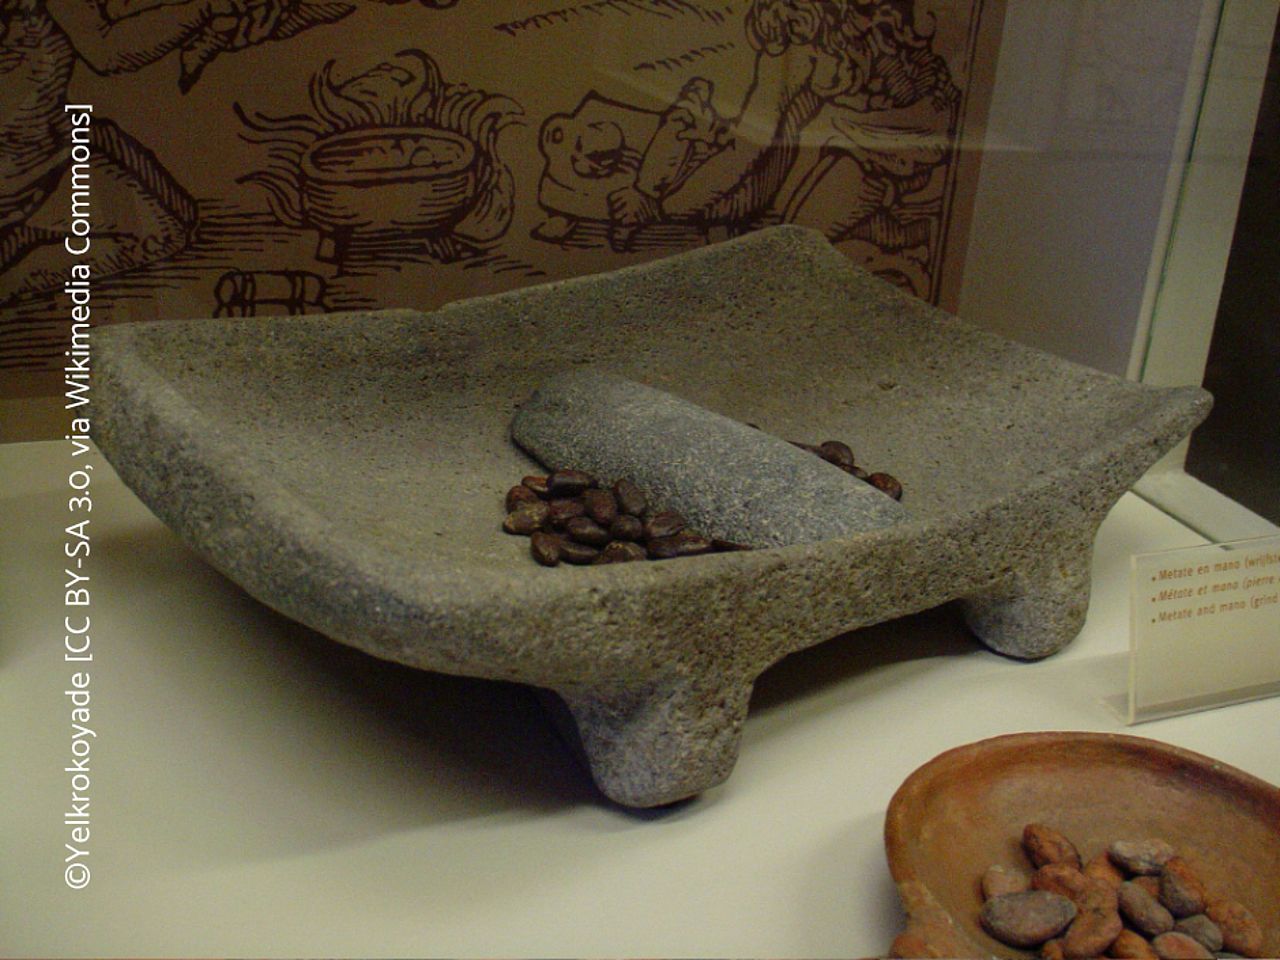 Metate (Mahlstein), auf dem per Hand die Kakaobohnen zerrieben wurden. © Yelkrokoyade, CC BY-SA 3.0, via Wikimedia Commos